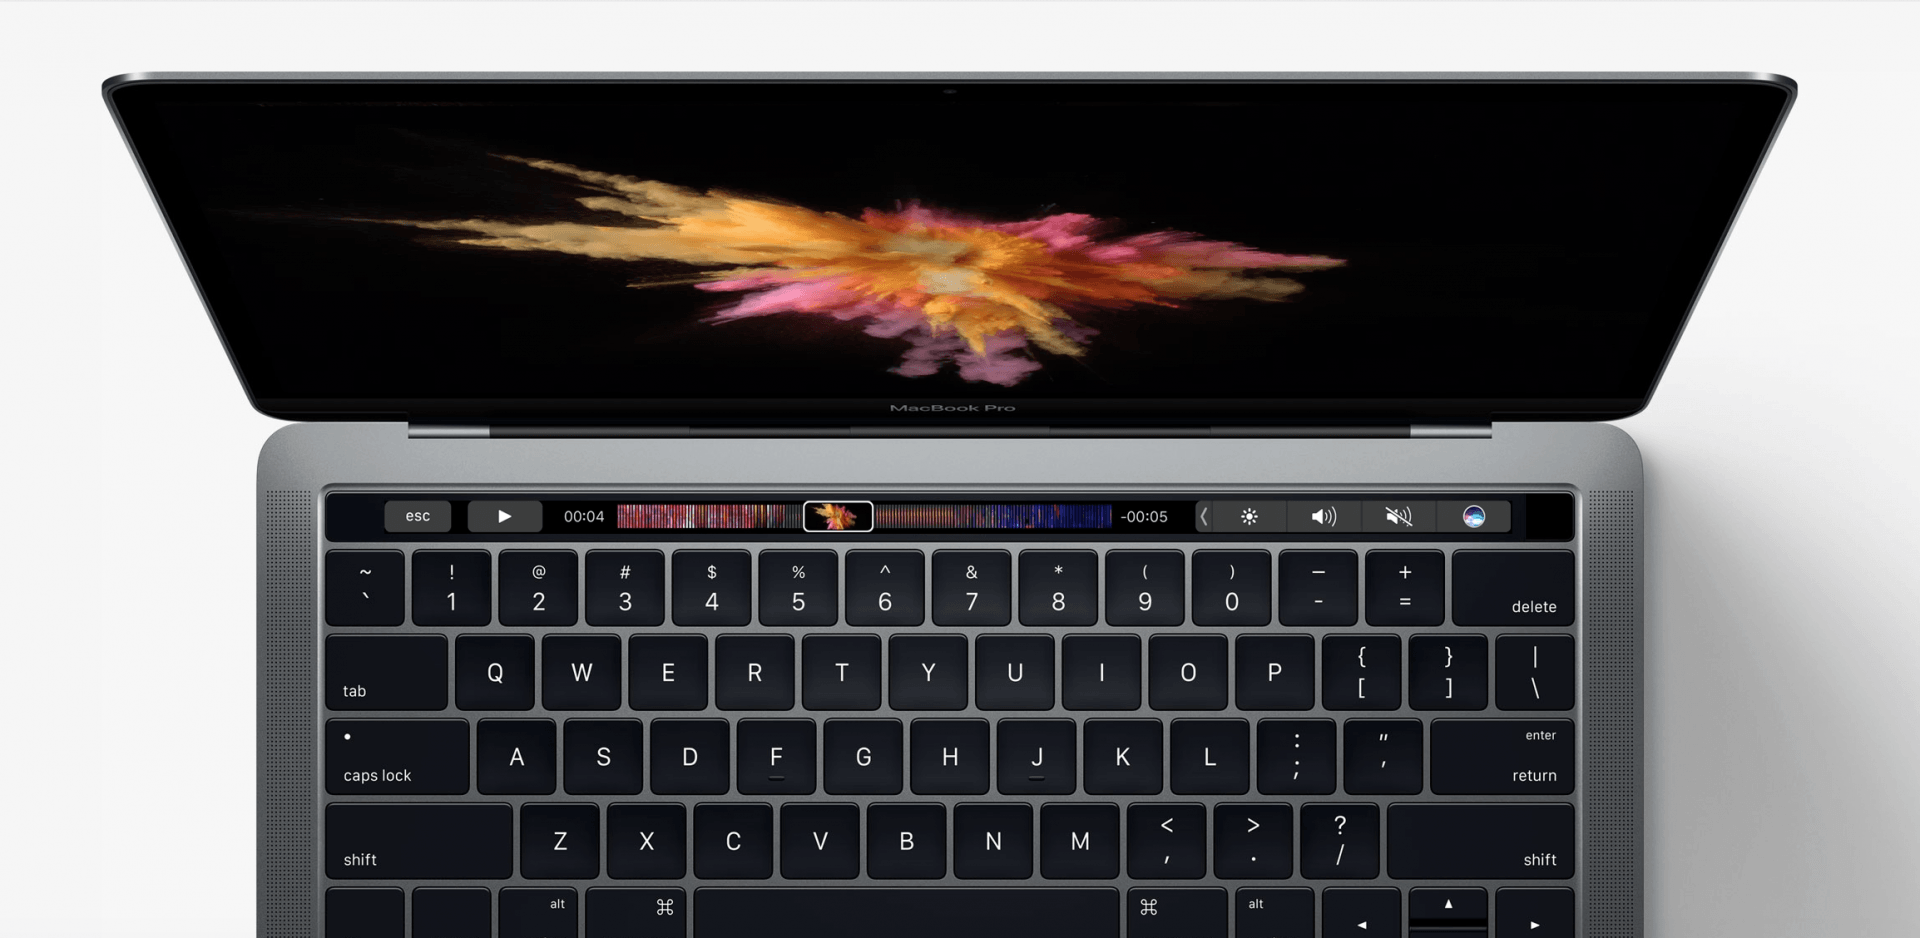 วิธีทำให้เสียงเปิดเครื่องกลับมาใน MacBook Pro รุ่นใหม่